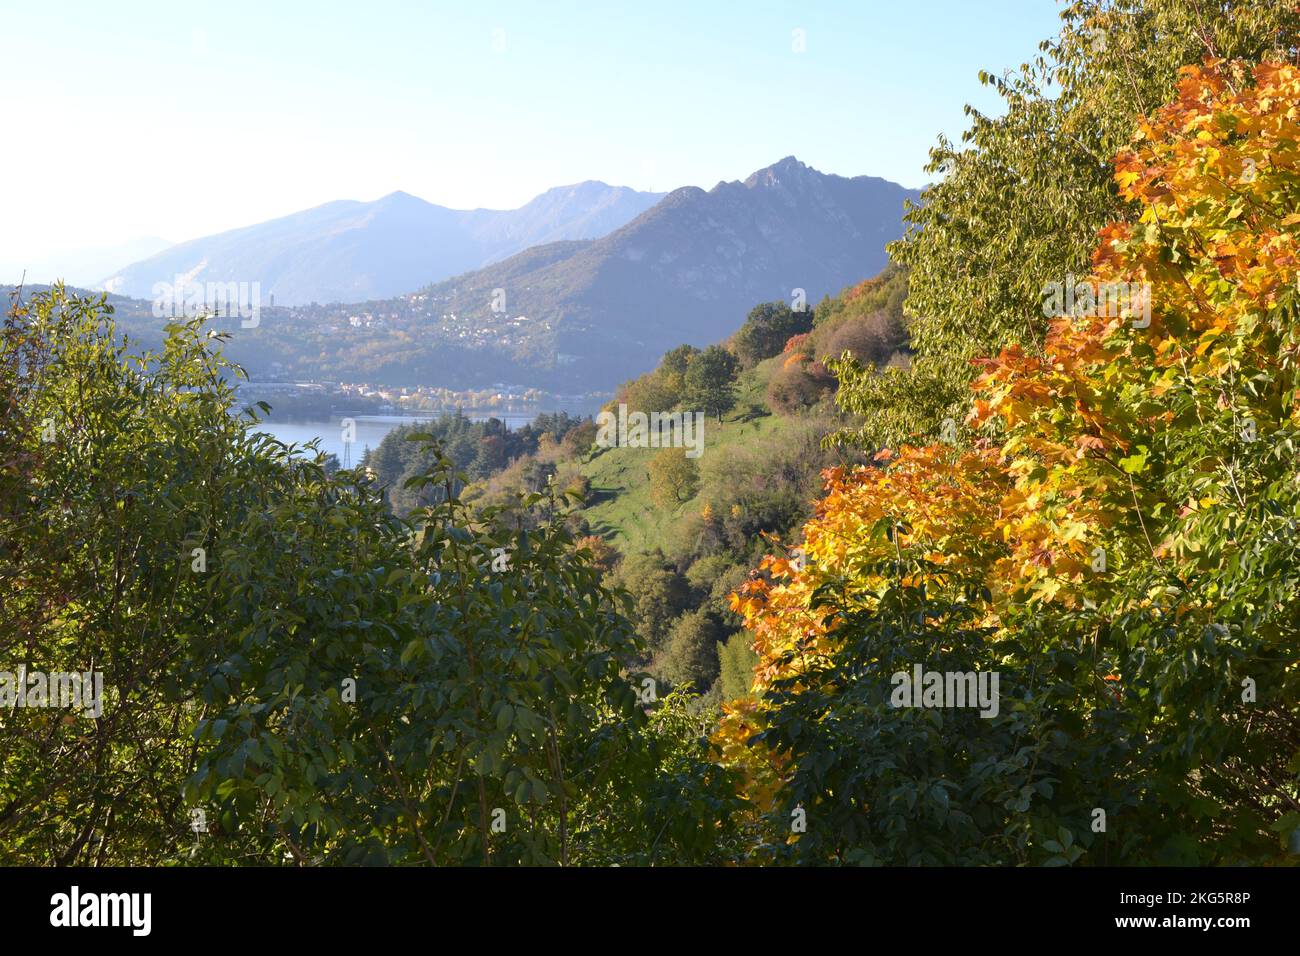 Wunderschöne Herbstlandschaft in Bergen mit Herbstbäumen im Vordergrund. Verwischen Sie die Berge und den See im Hintergrund. Mehrstufiges Panorama. Stockfoto